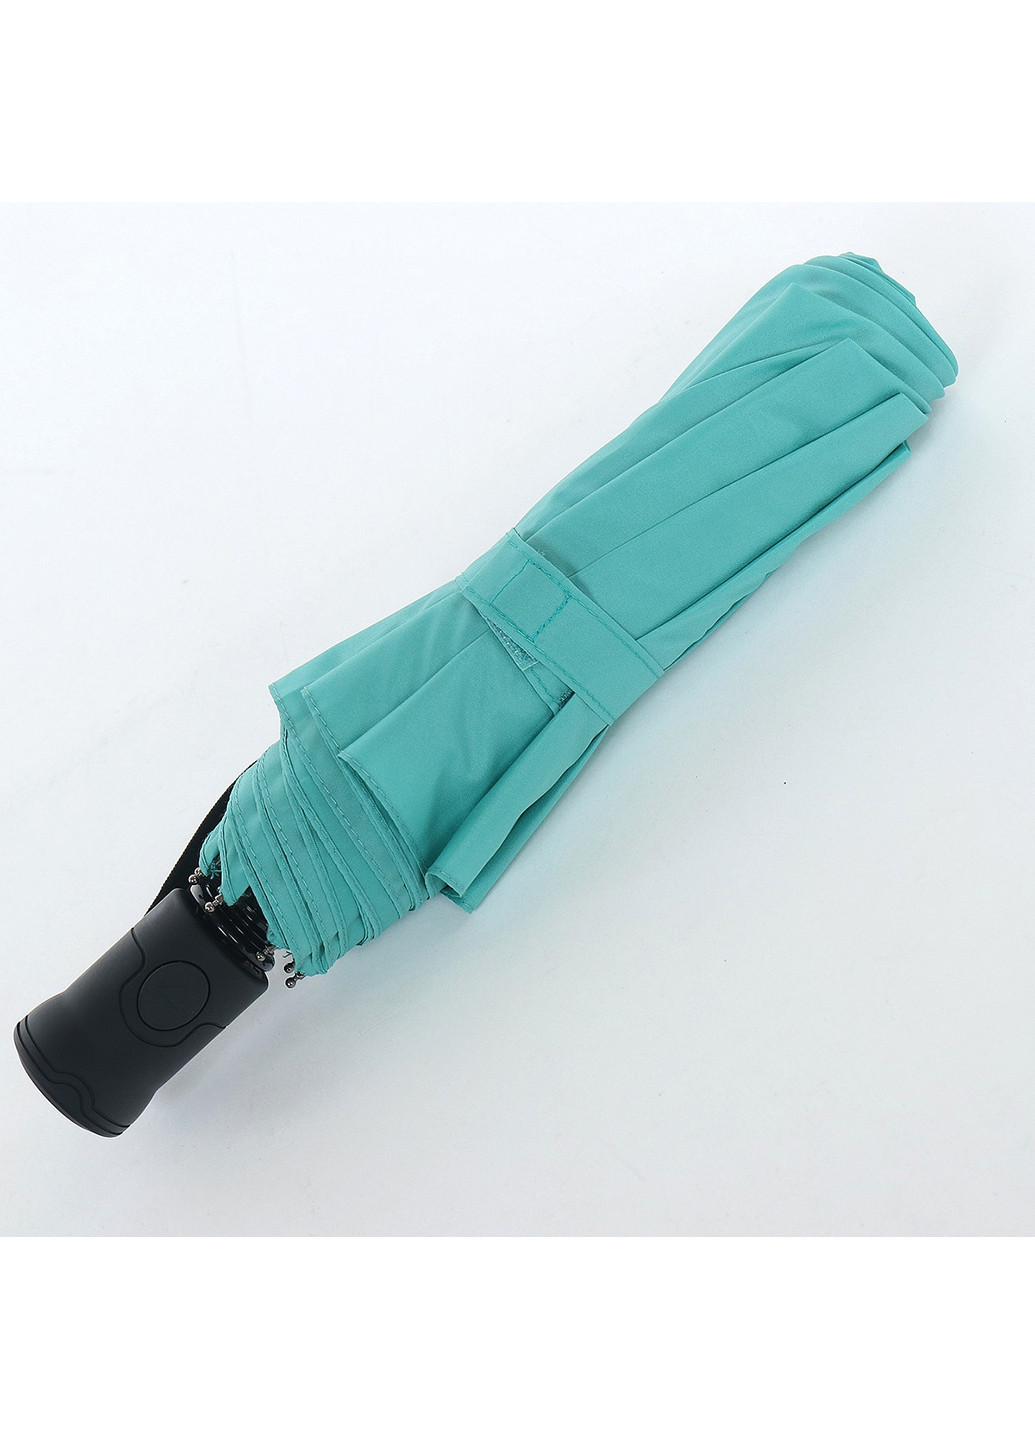 Женский складной зонт полуавтомат 98 см ArtRain (255710359)